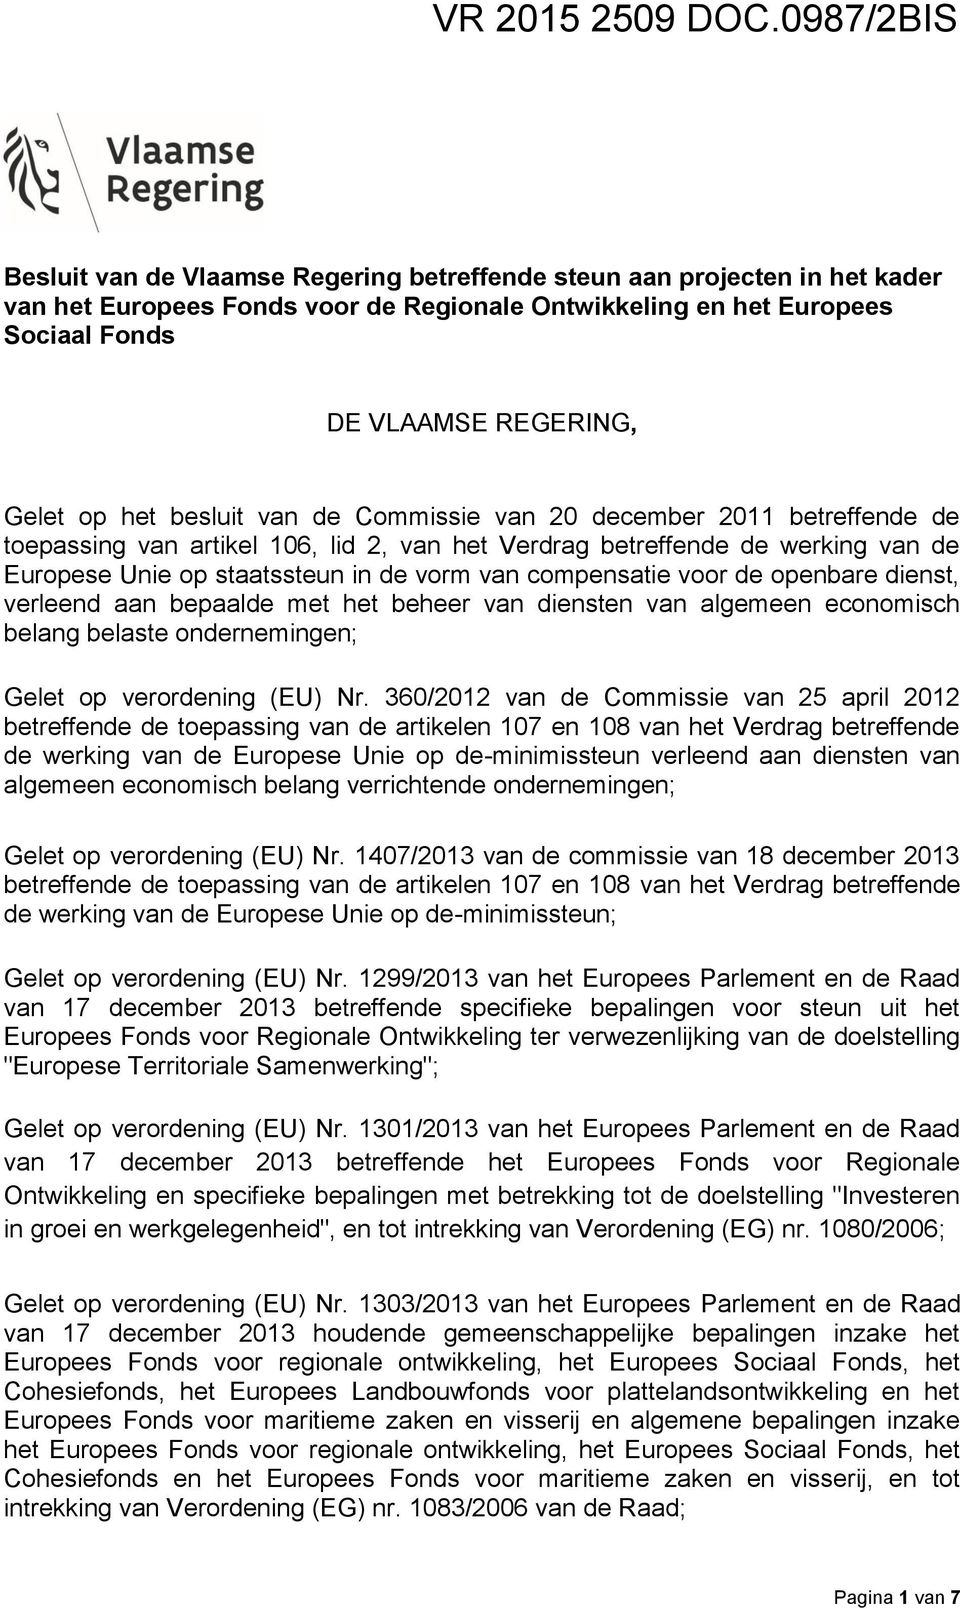 op het besluit van de Commissie van 20 december 2011 betreffende de toepassing van artikel 106, lid 2, van het Verdrag betreffende de werking van de Europese Unie op staatssteun in de vorm van